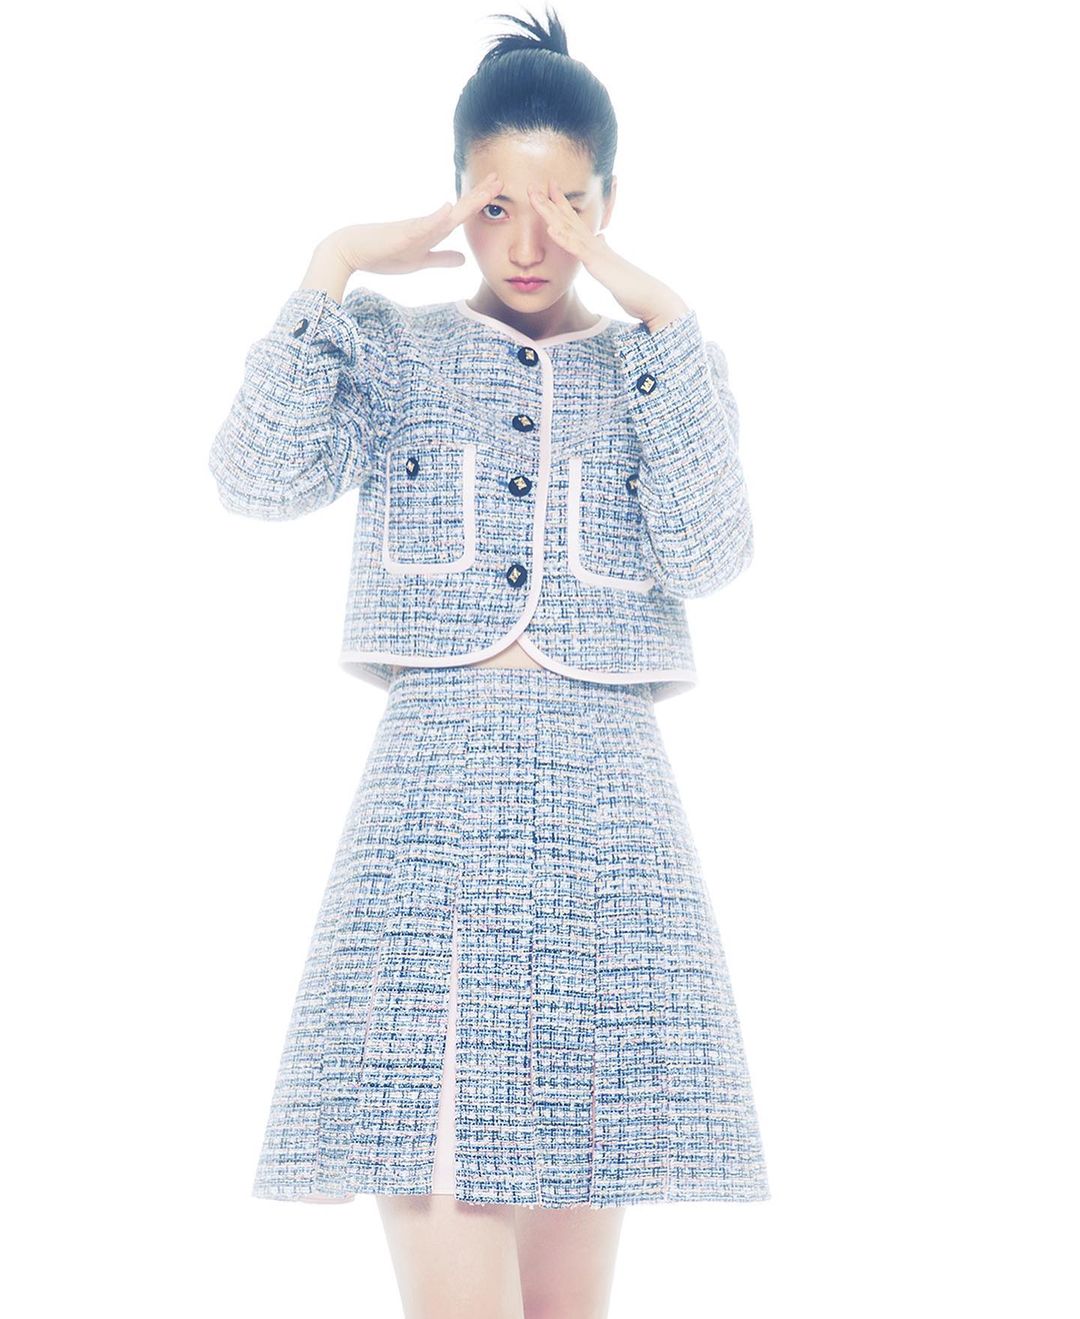 Bán Chạy!Set Áo Khoác + Chân Váy Dài Vải Tweed Thời Trang Thu Đông 2020  Thanh Lịch Cho Nữ - Tìm Voucher